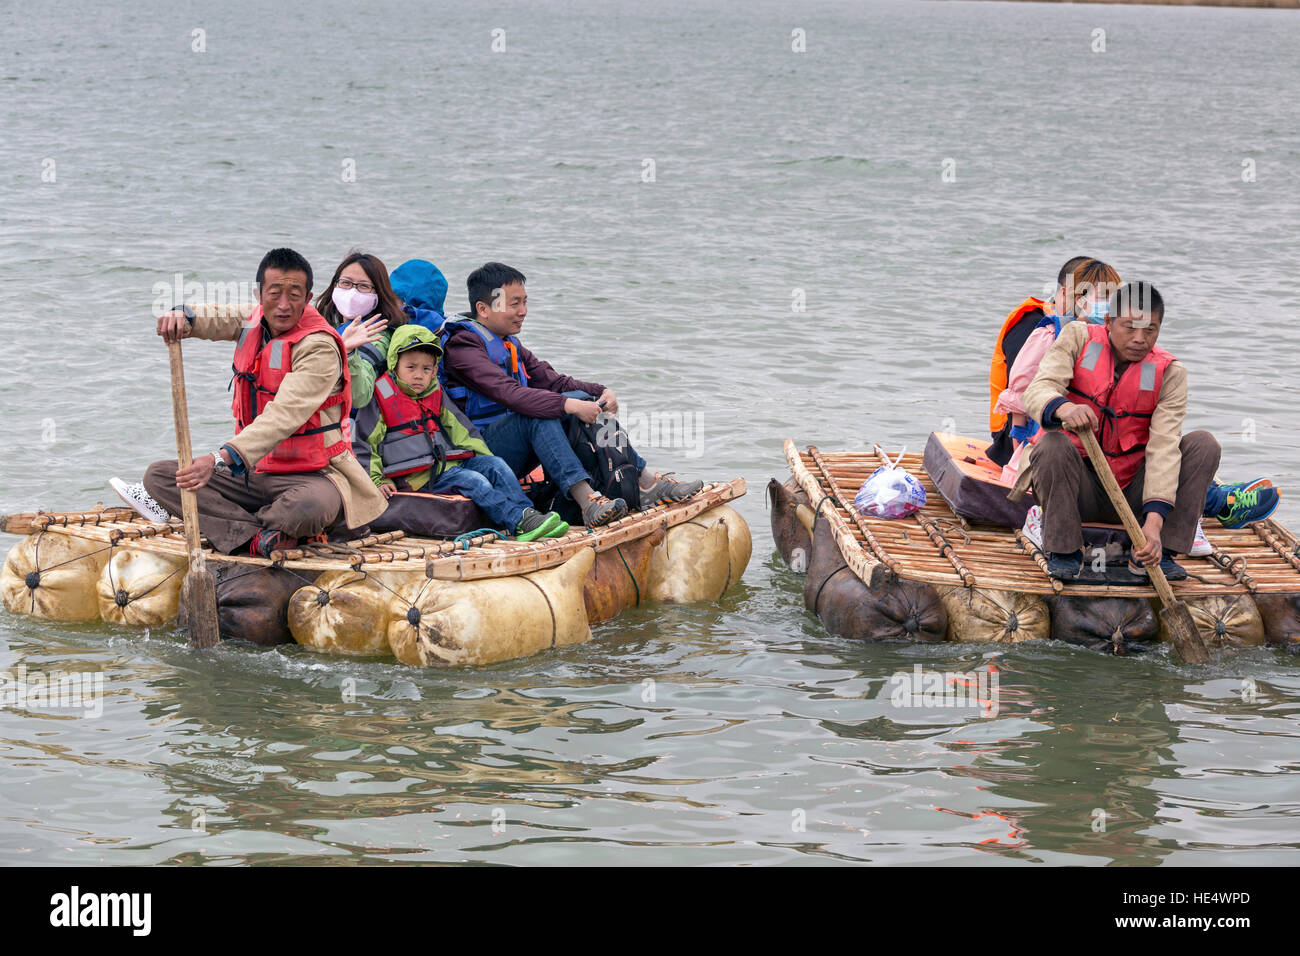 Les touristes chinois sur le fleuve Jaune en radeau, Shapotou Scenic Area, Zhongwei, Ningxia, Chine Banque D'Images